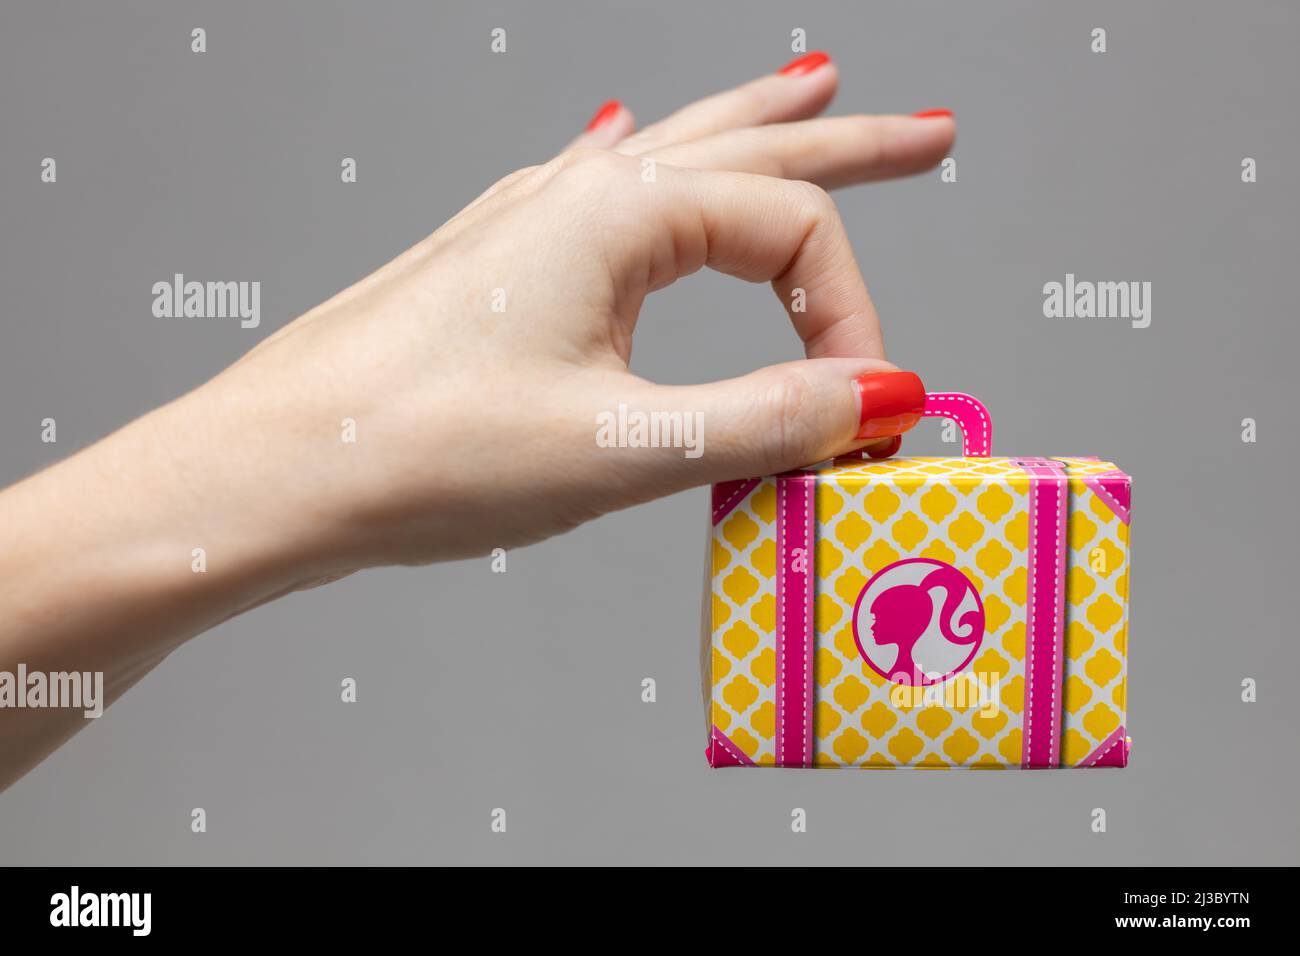 Weibliche Hand, die einen Koffer aus Spielzeugkarton hält Stockfoto